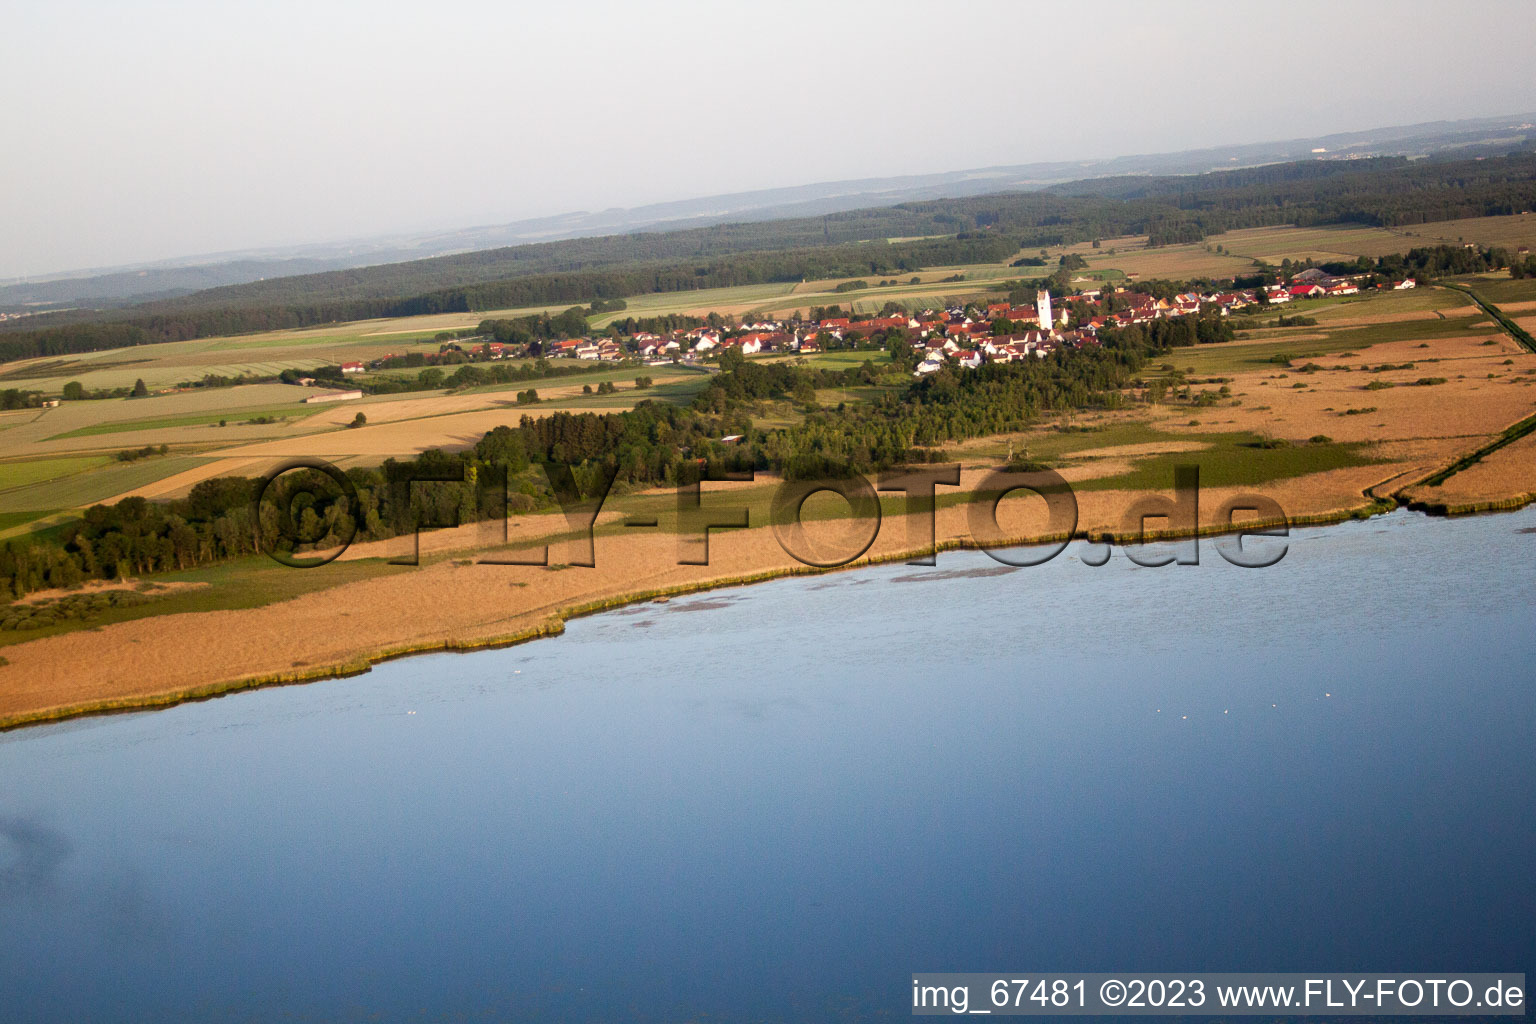 Federsee avec des habitations sur pilotis à Tiefenbach dans le département Bade-Wurtemberg, Allemagne hors des airs